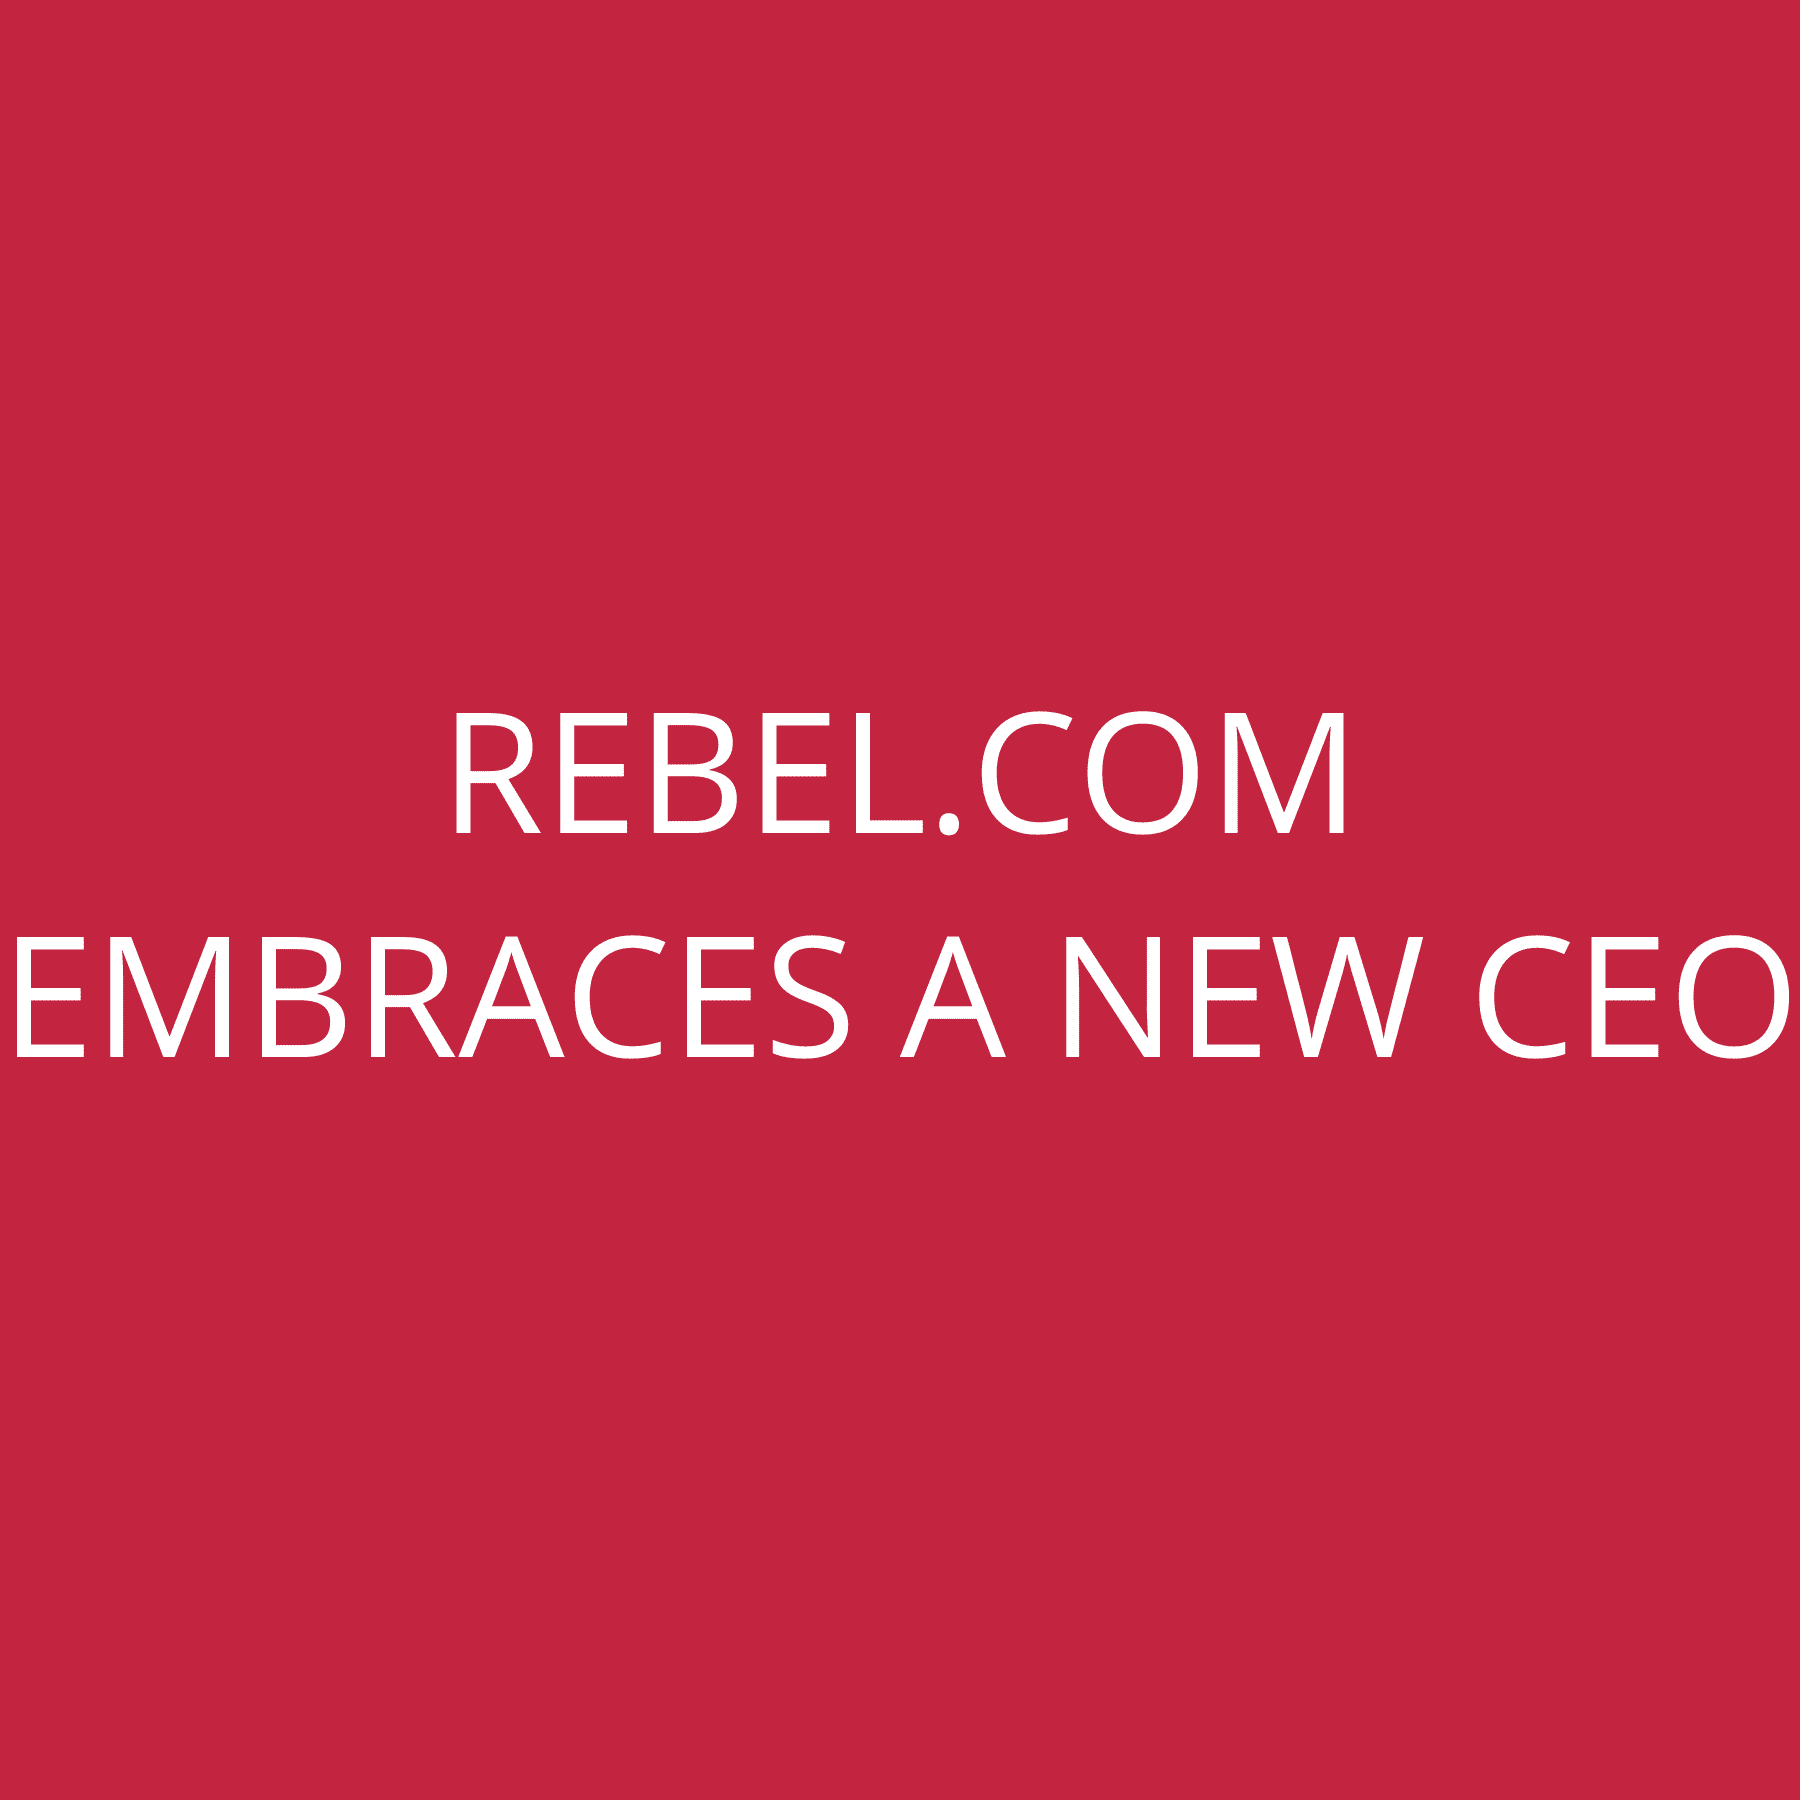 Rebel.com embraces a new CEO